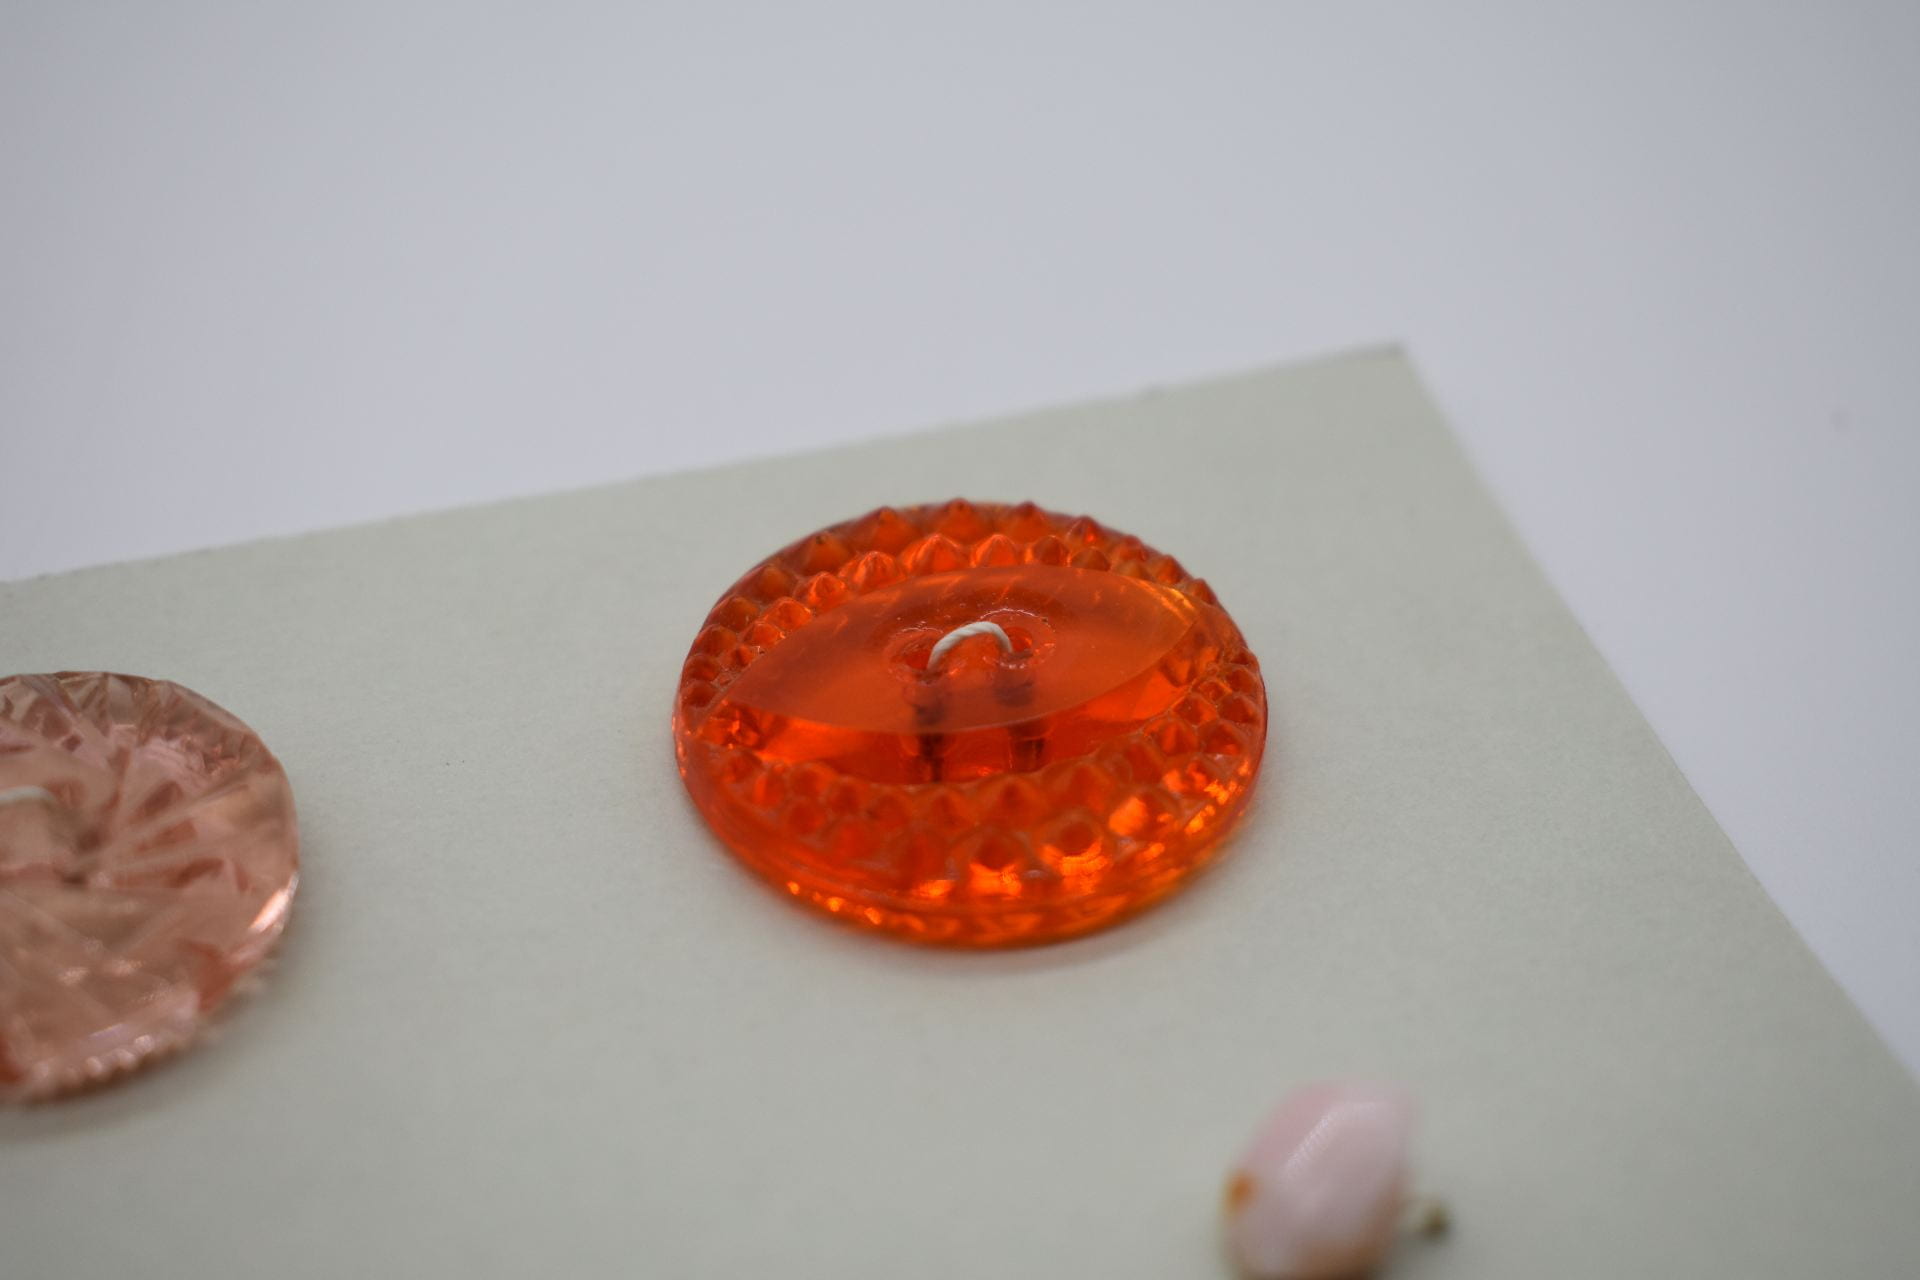 A transluscent bright orange button.